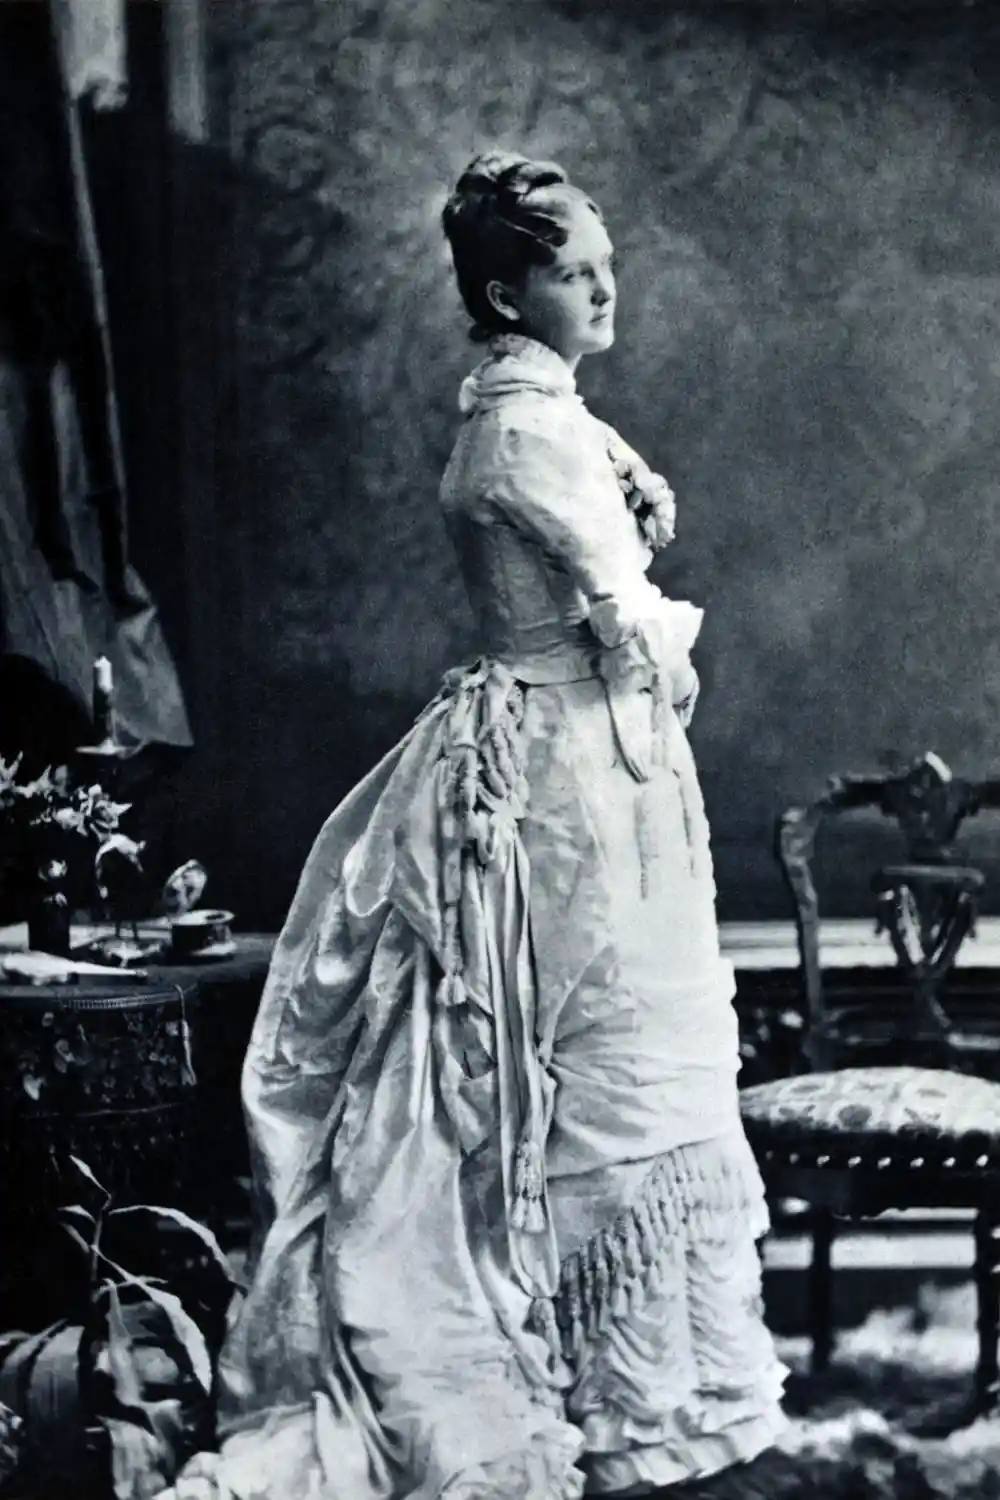 Victorian women wearing bustle dress